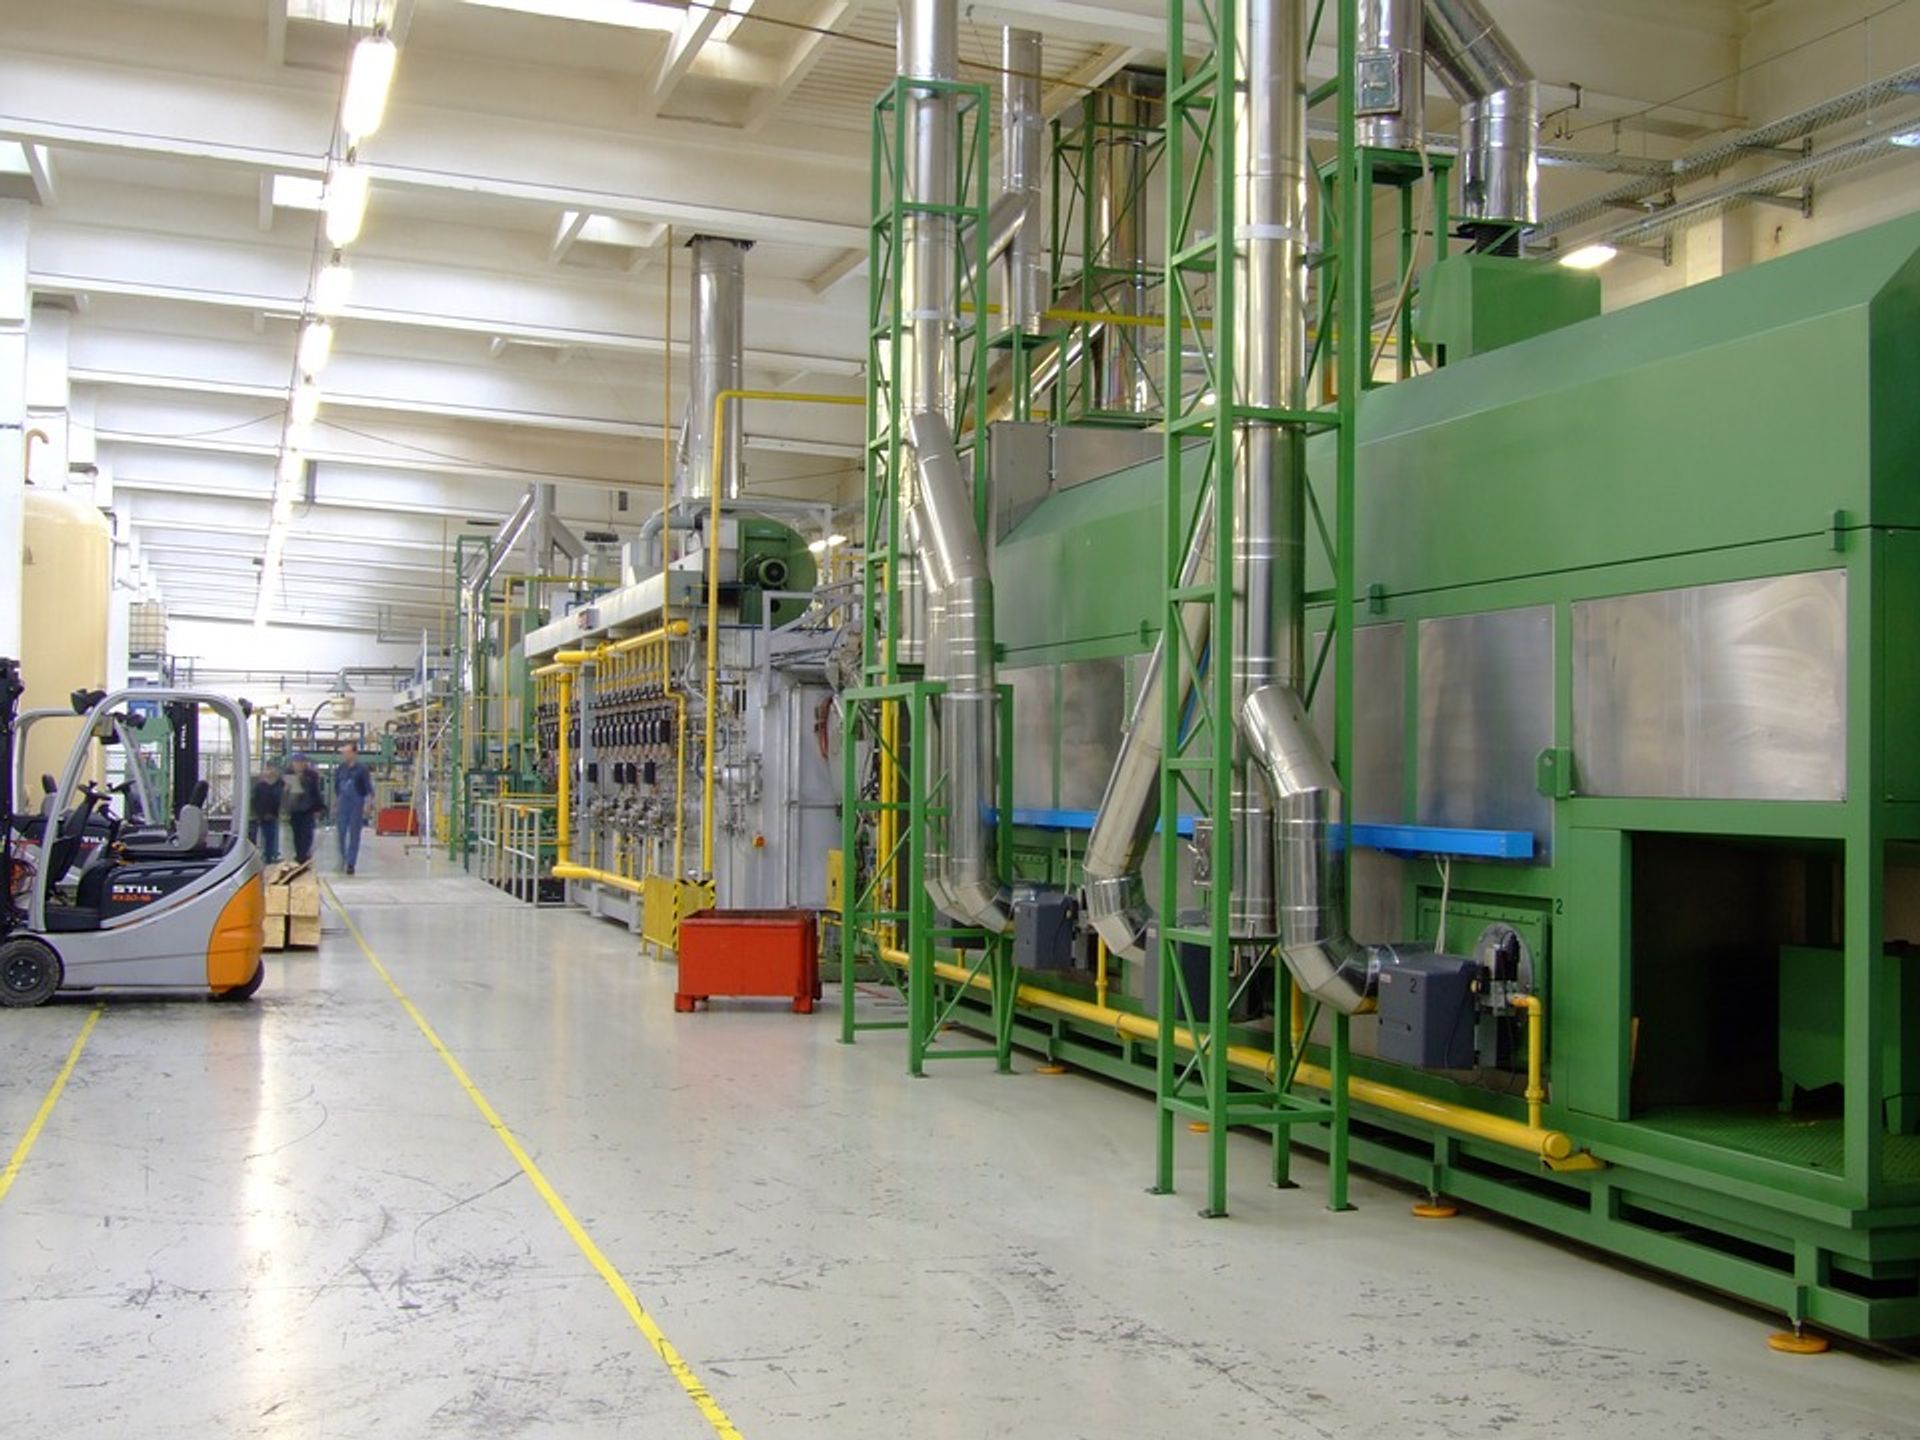  T4B planuje budowę fabryki w Miliczu